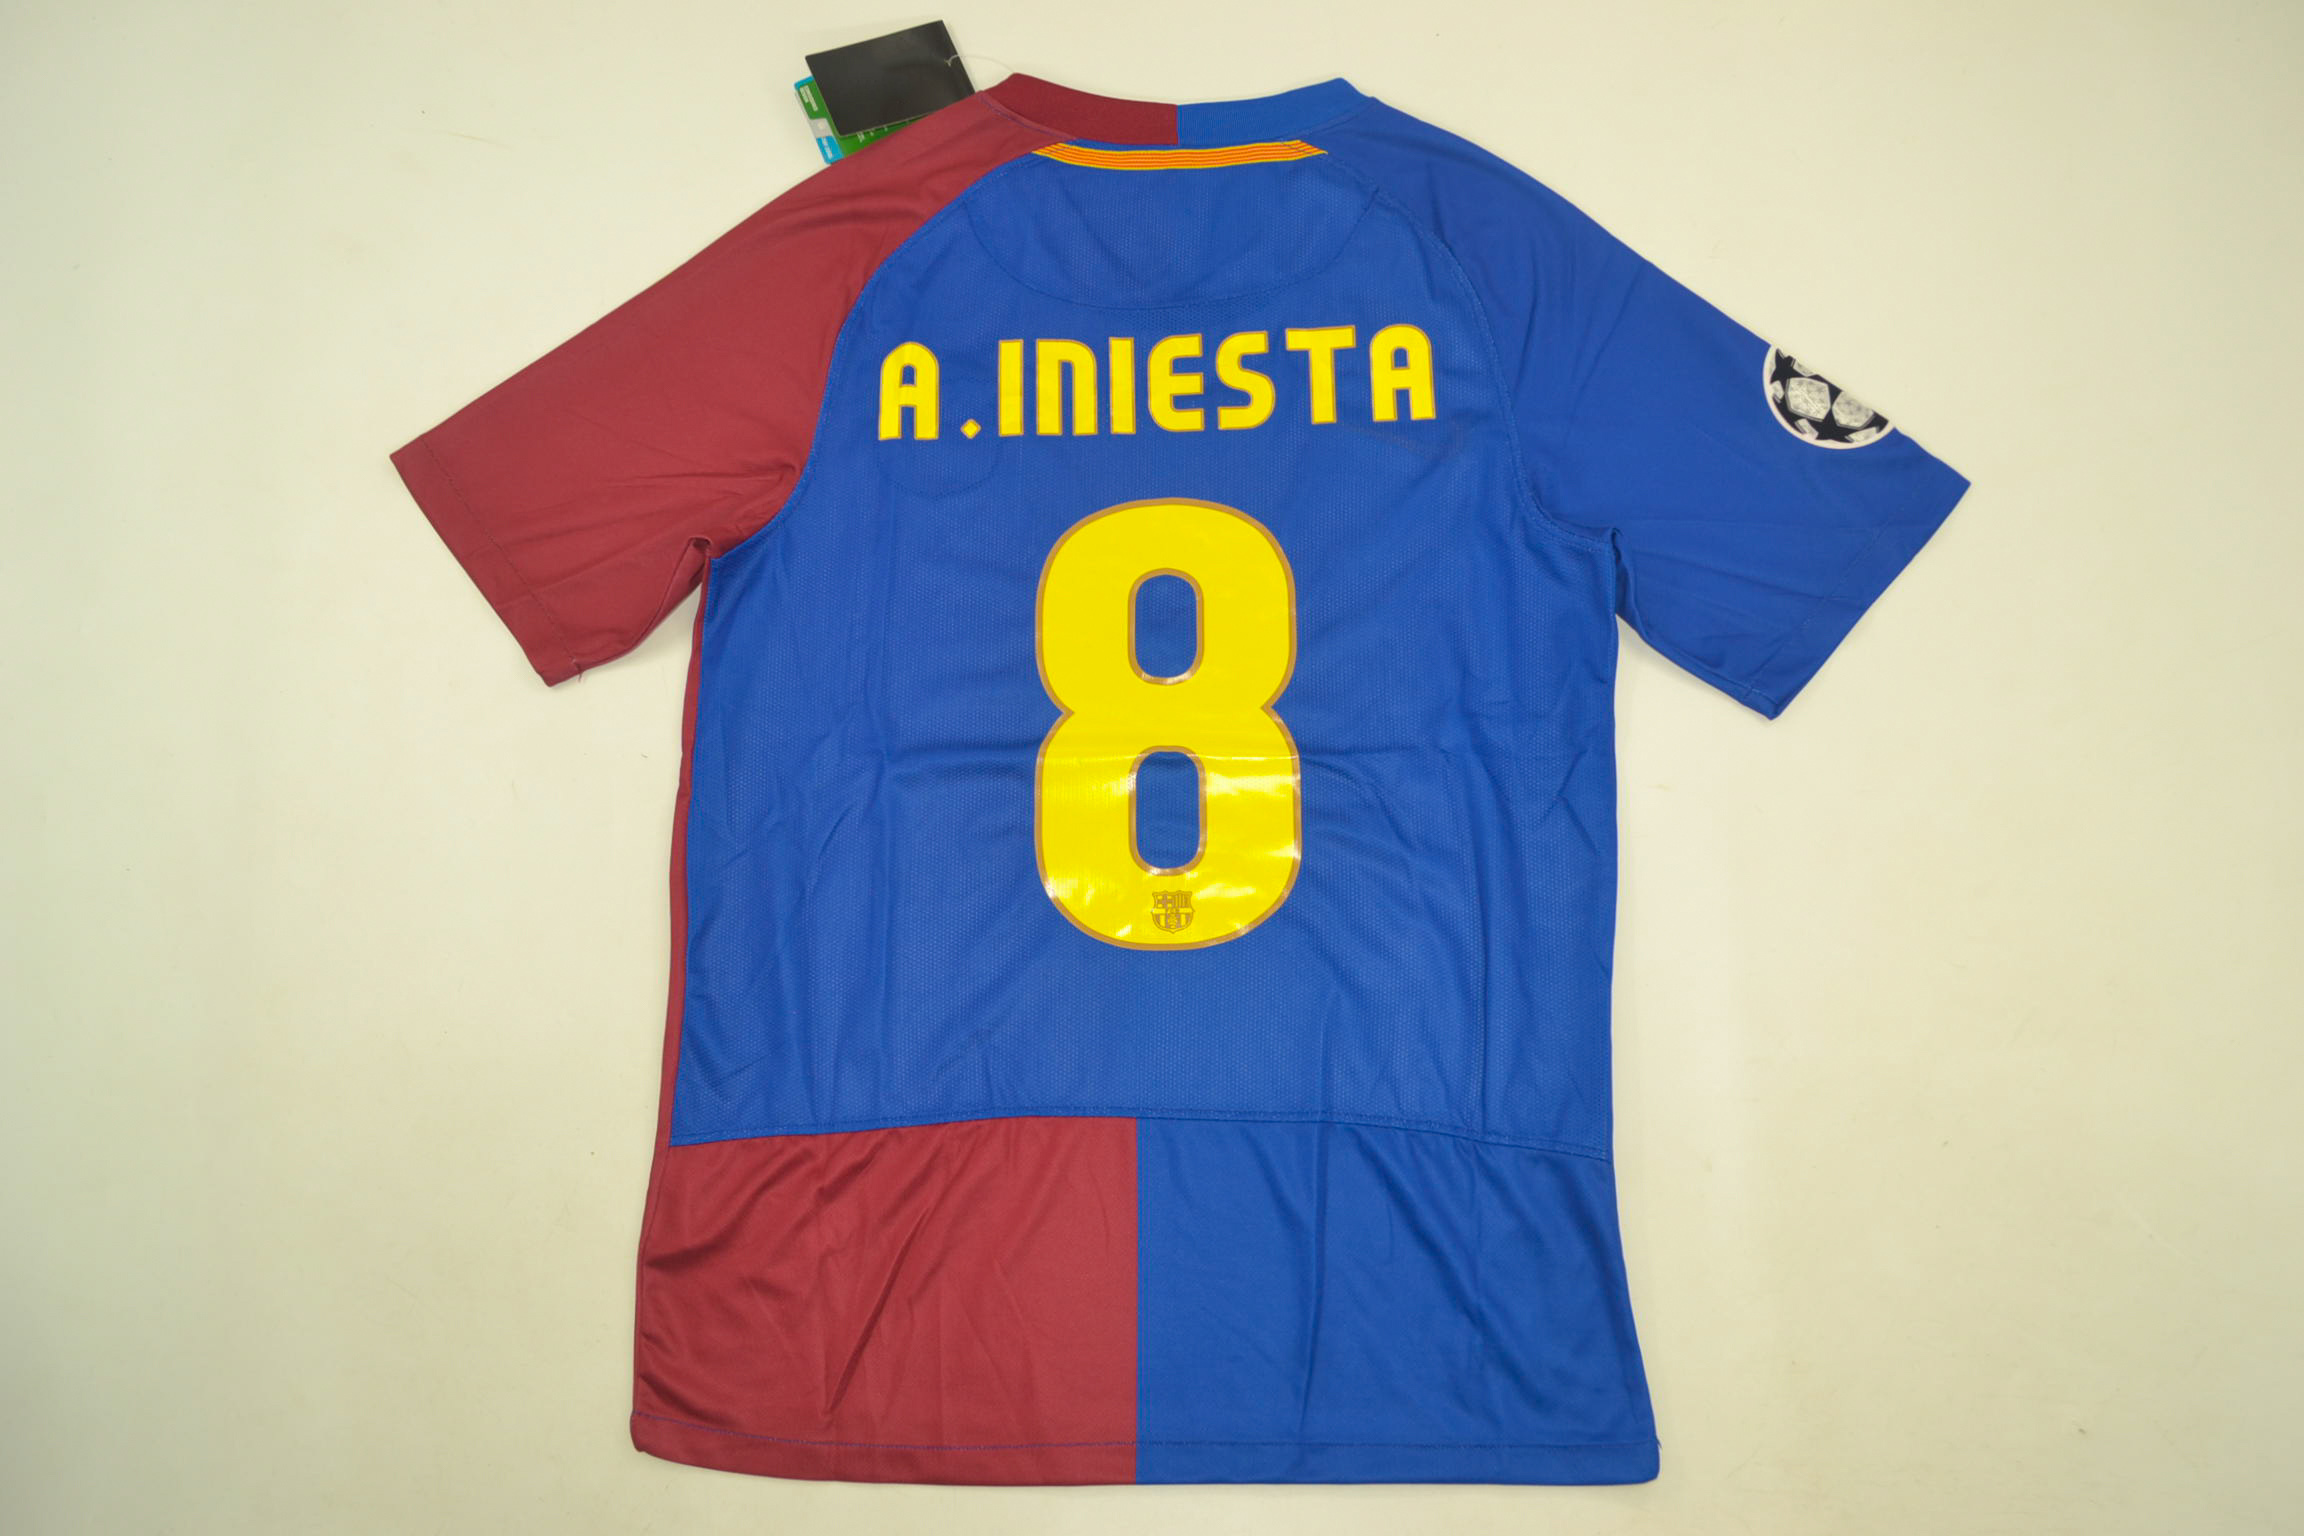 Barcelona 2009 Champions League Final Shirt [Free Shipping]